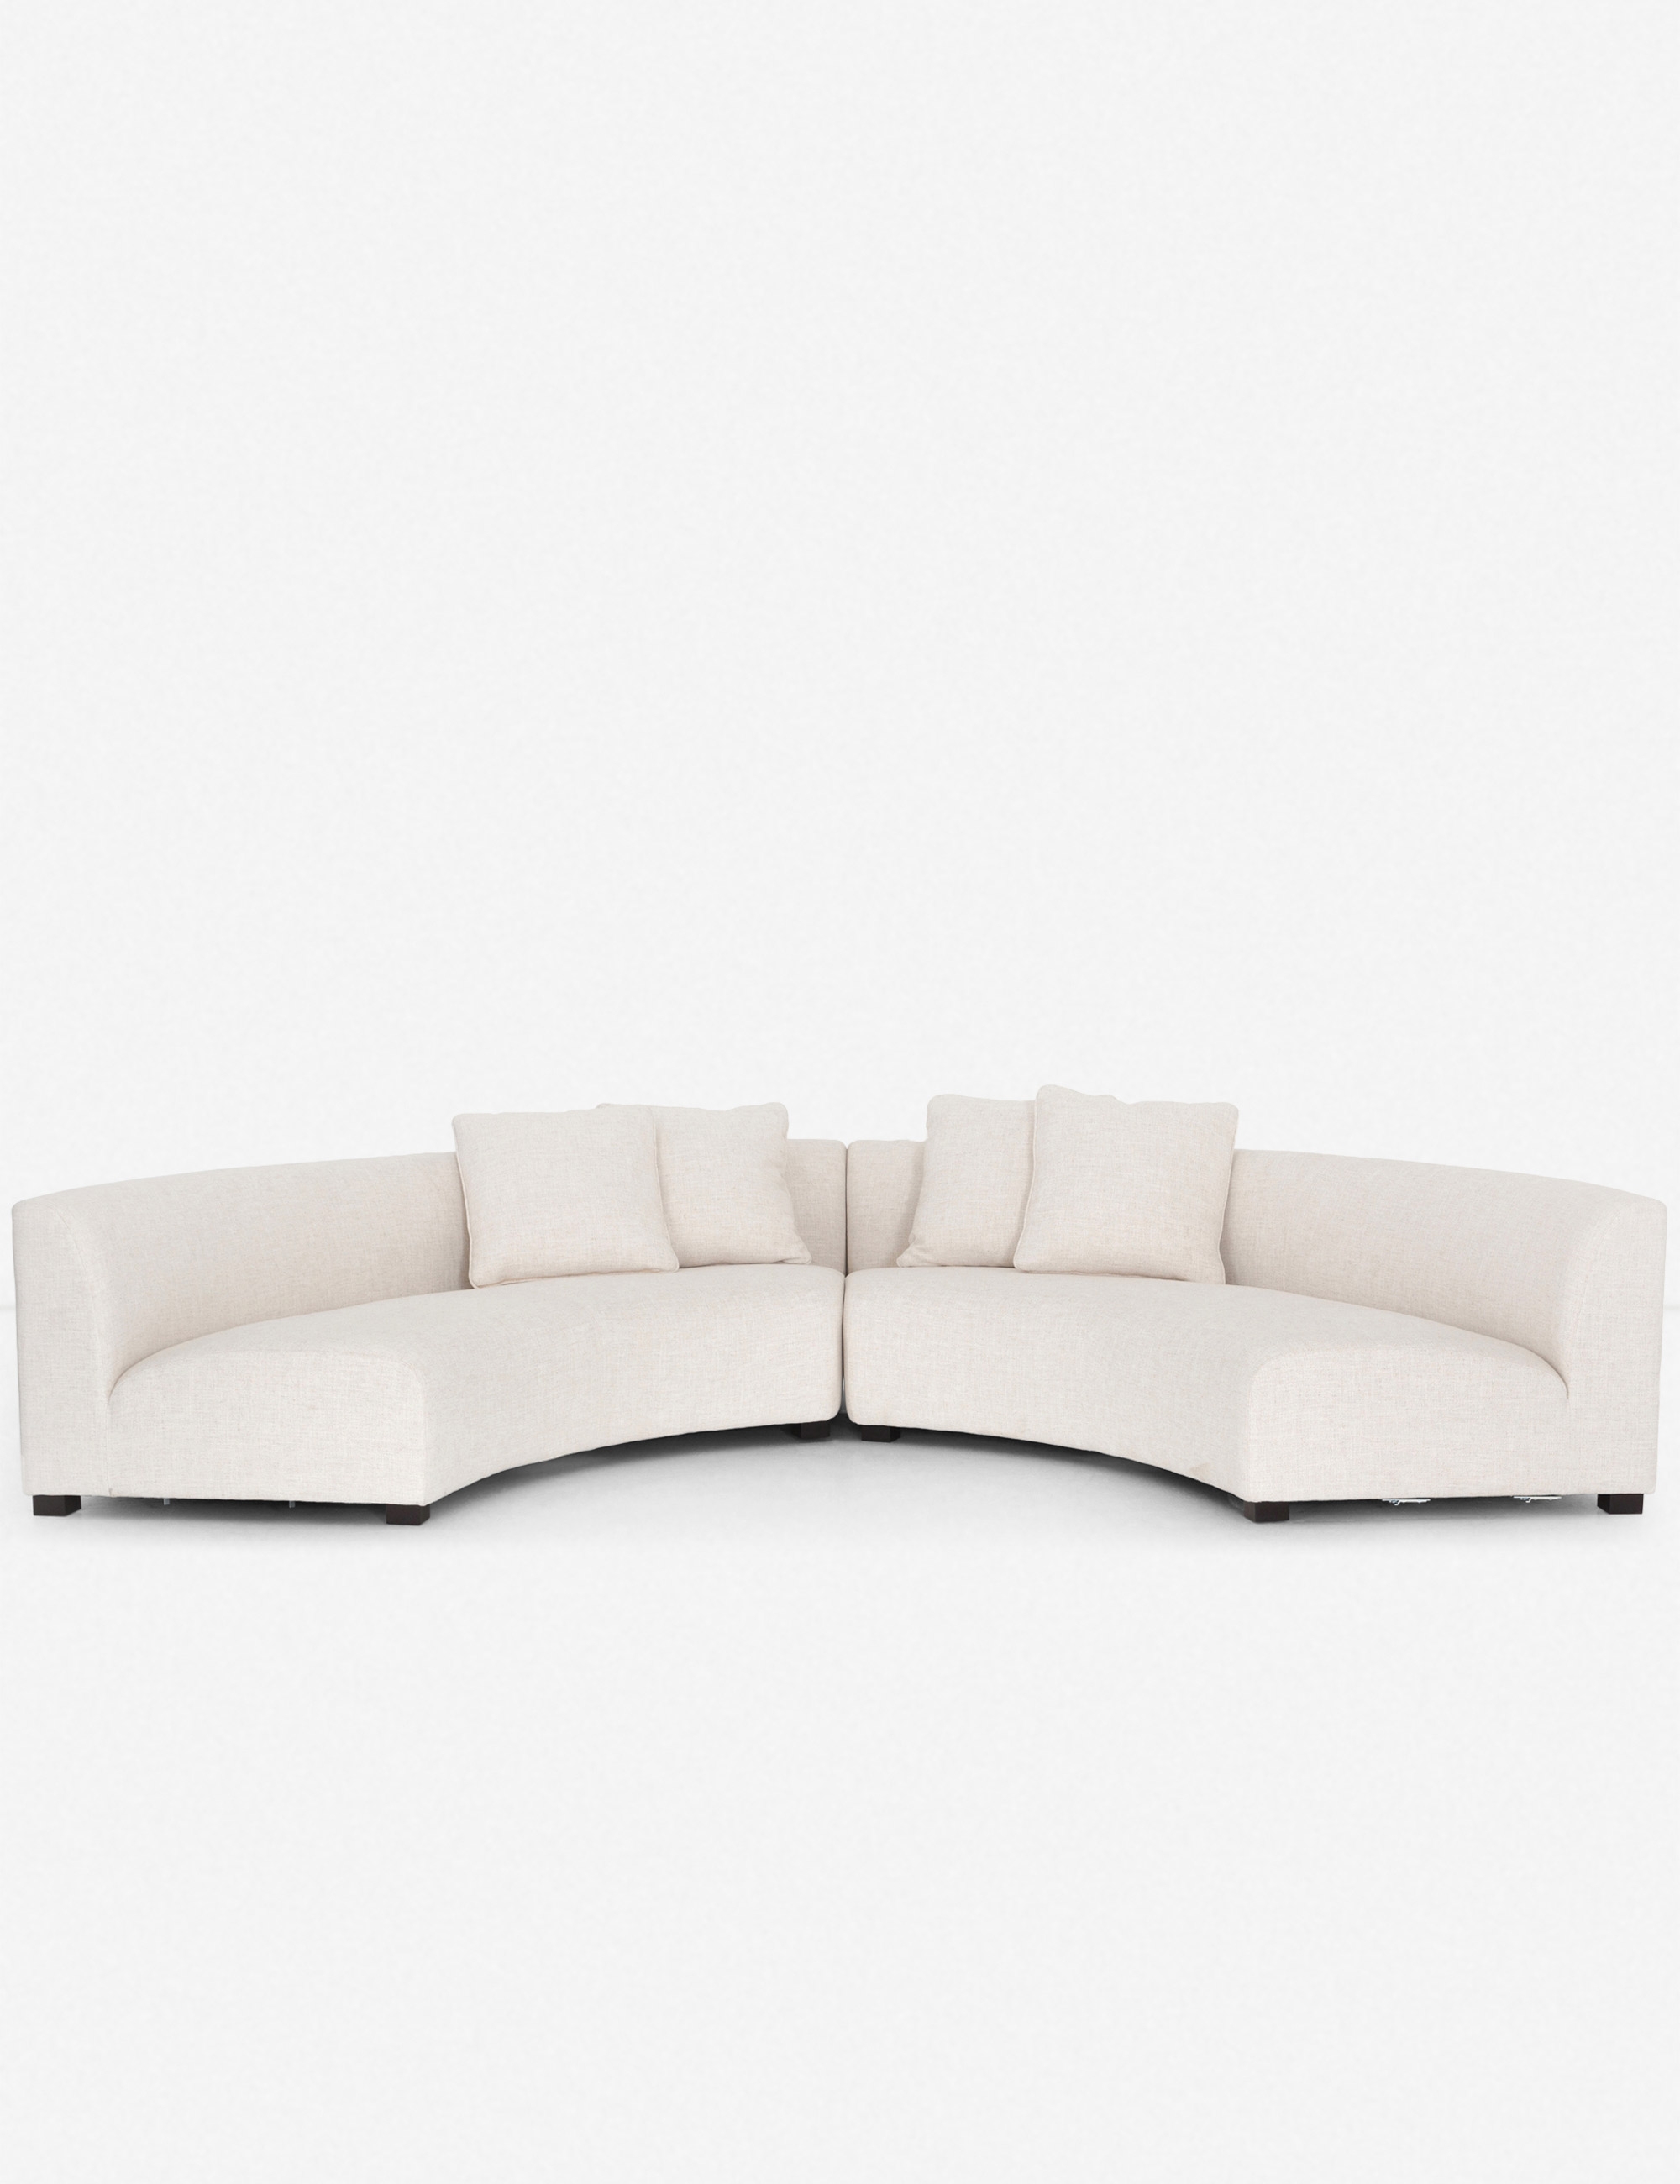 Saban 2-Piece Curved Sectional Sofa - Image 3